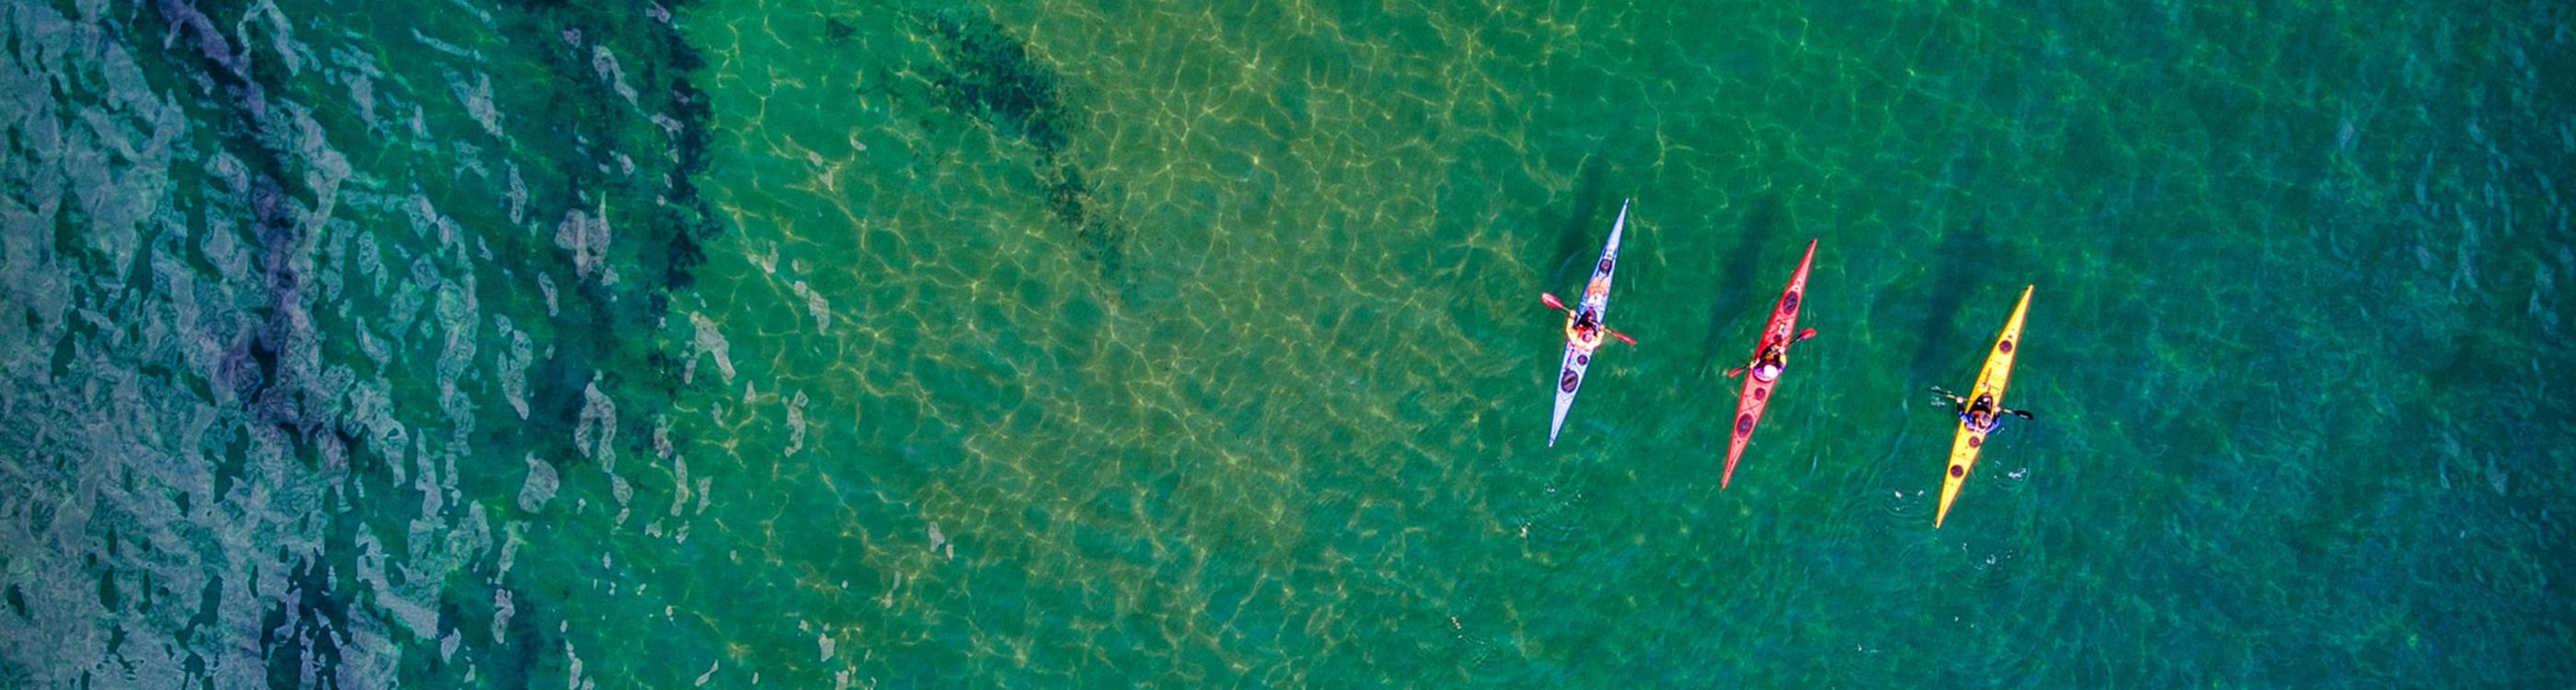 Three people kayaking on the Jurassic Coast